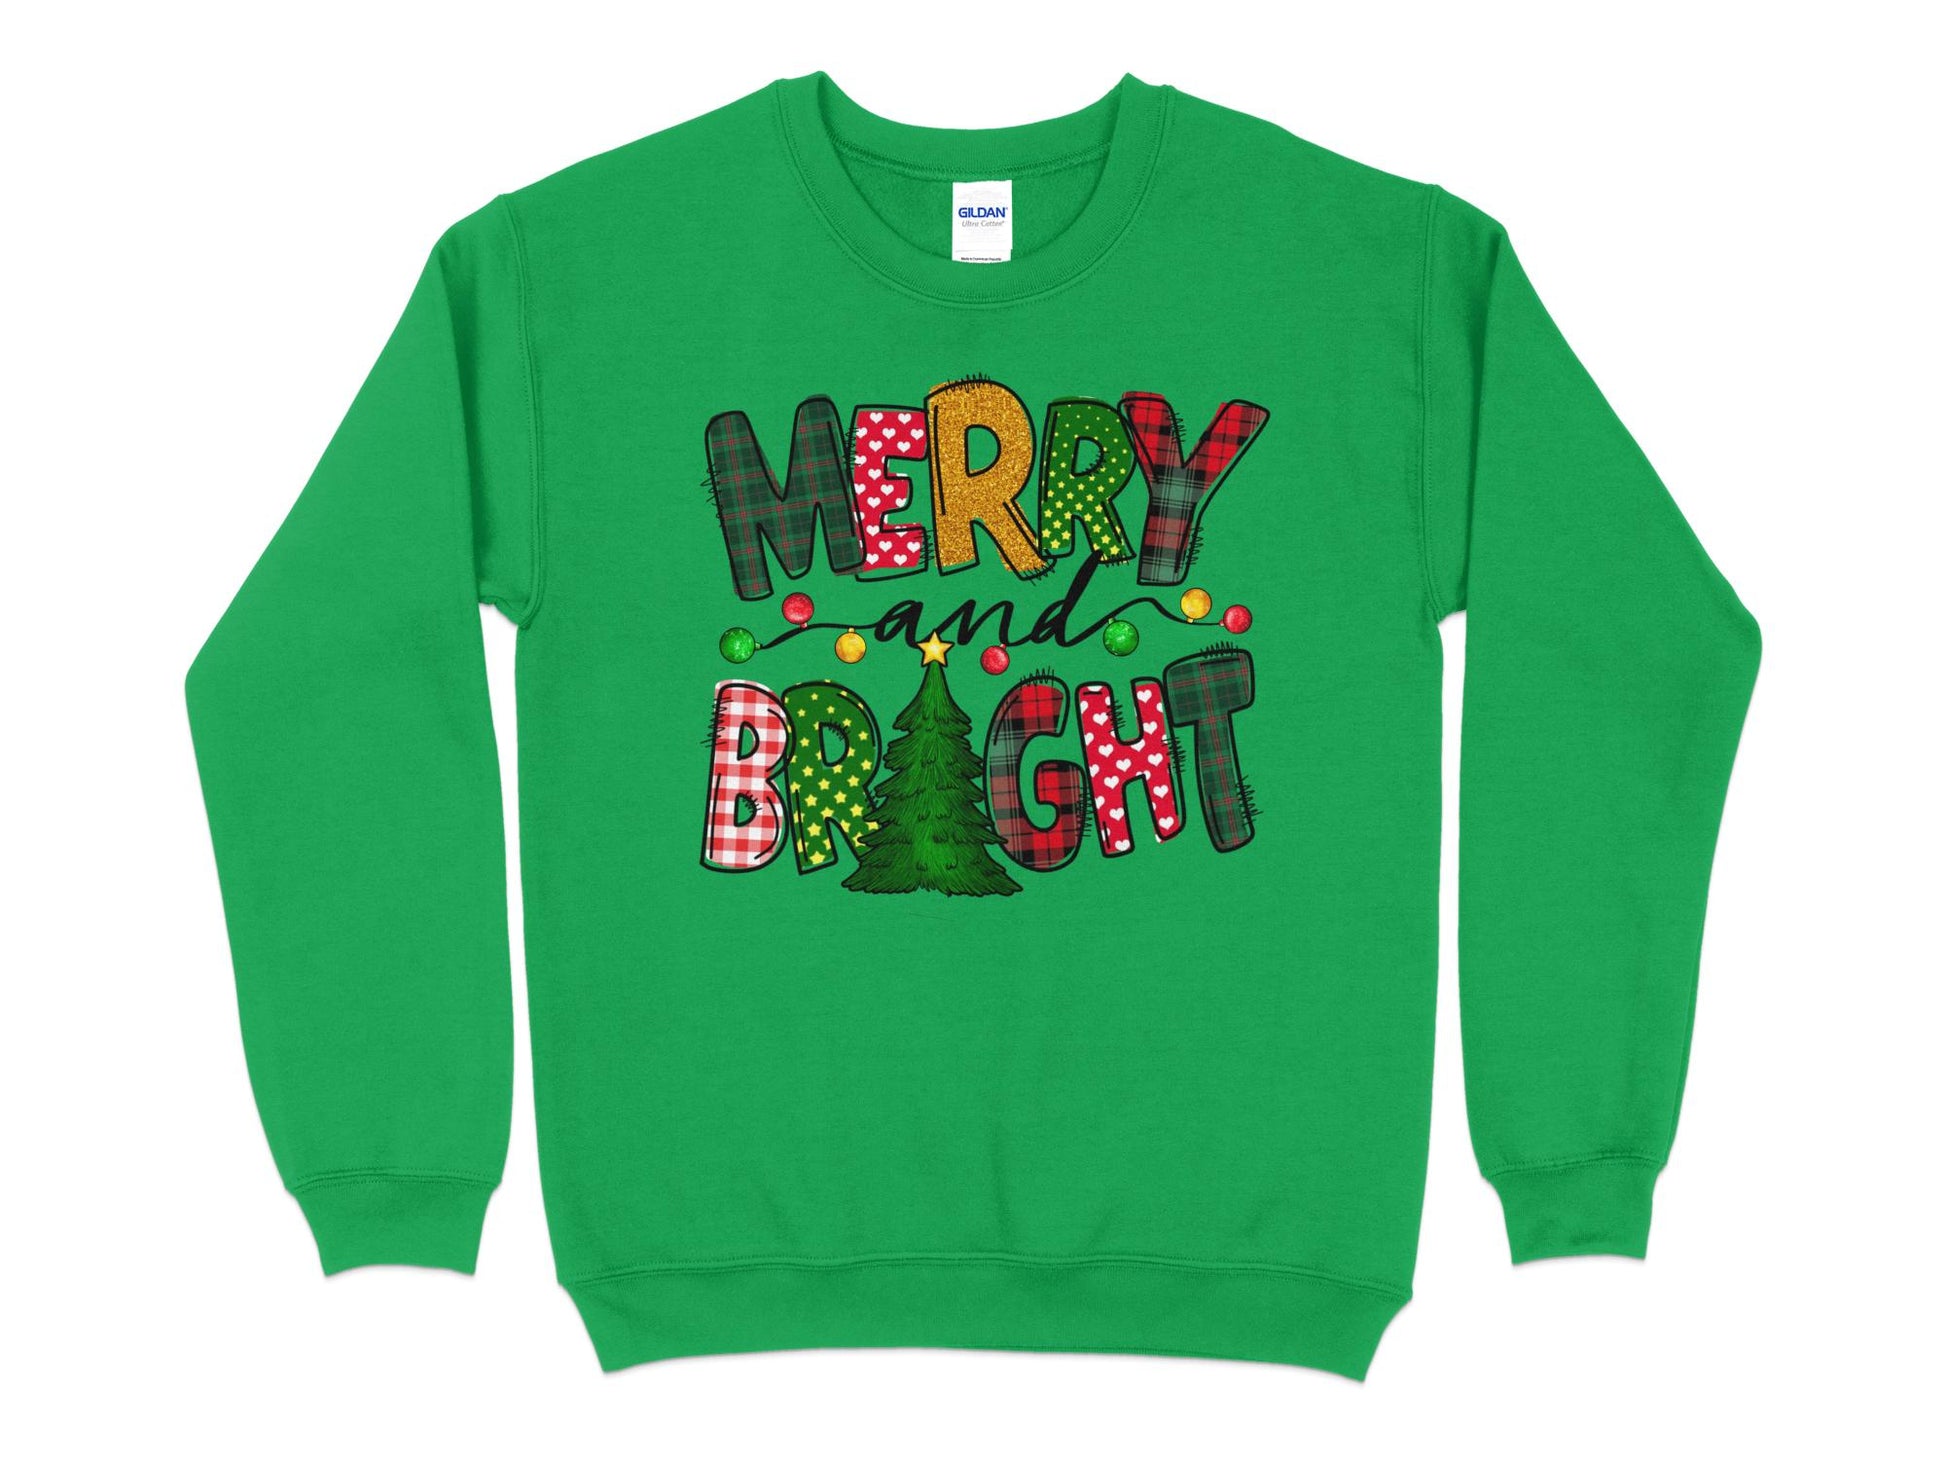 Merry and Bright Sweatshirt, Merry Christmas Shirt for Women, Christmas Crewneck - Mardonyx Sweatshirt Irish Green / S